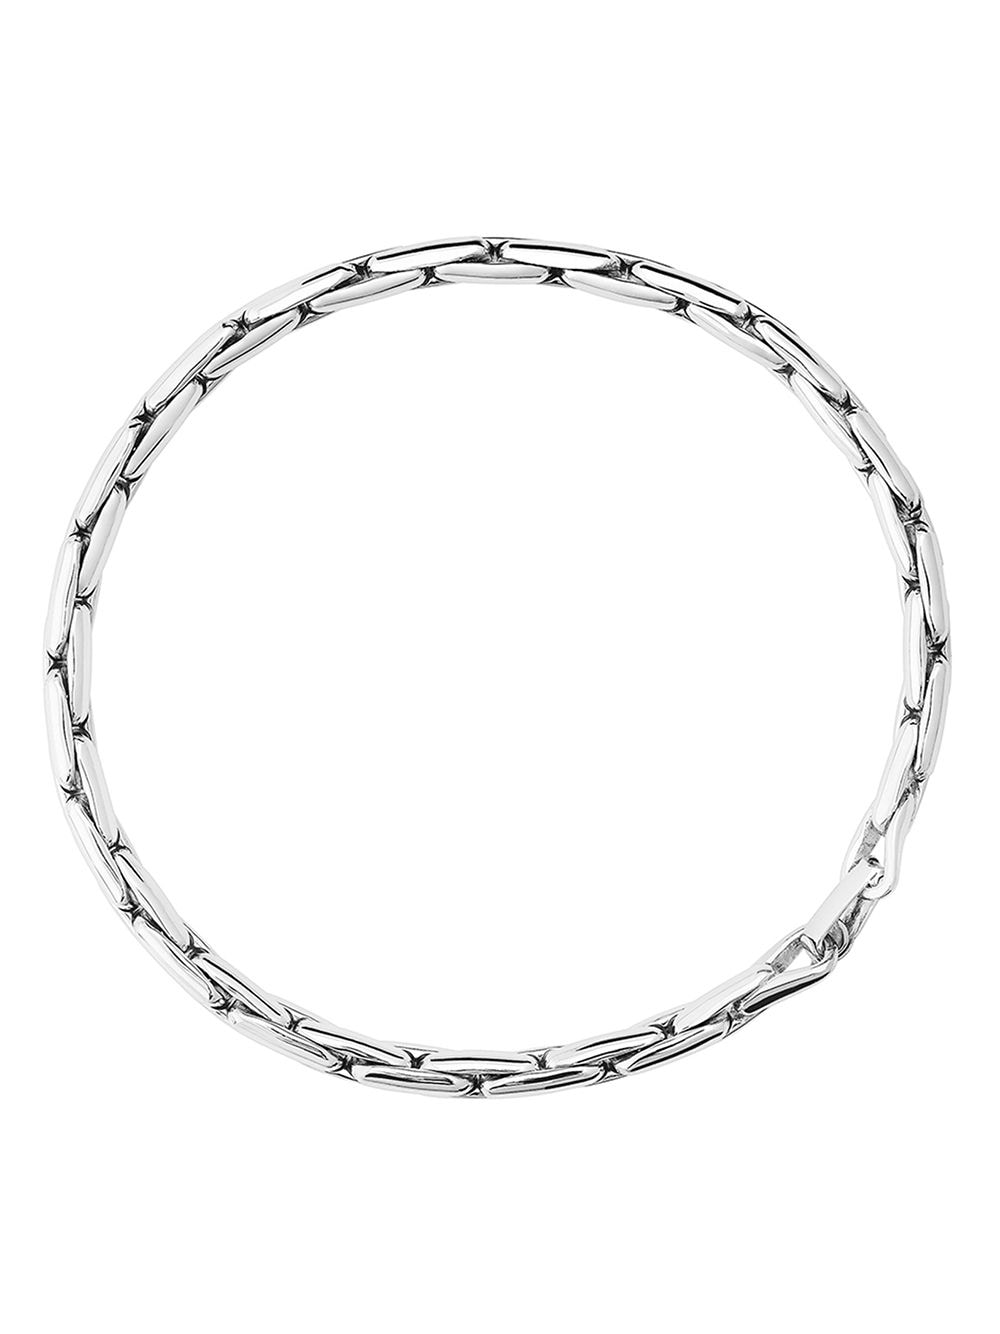 Tane México 1942 Andromeda Chain Bracelet In Silver